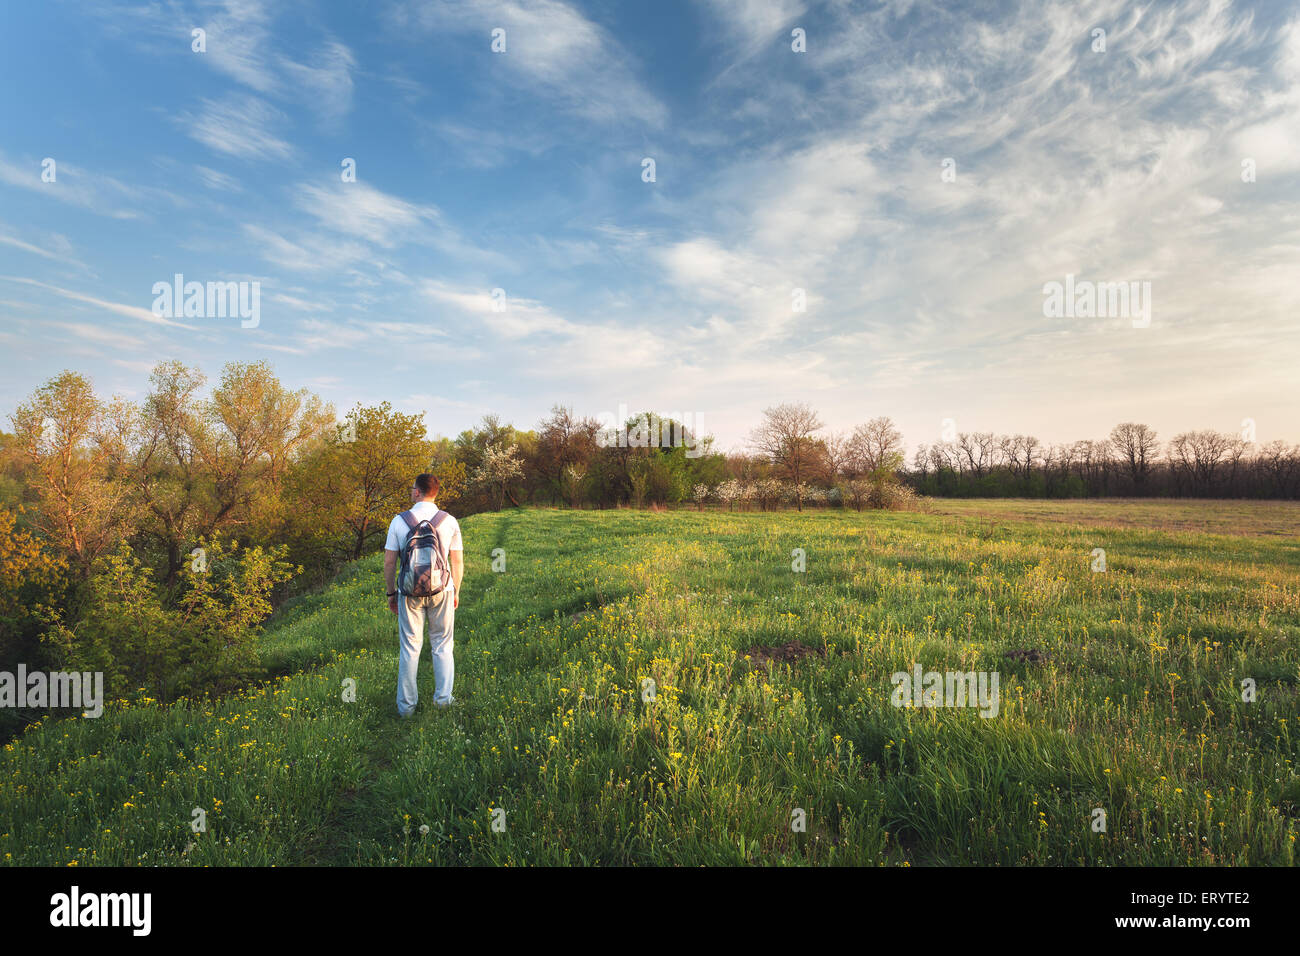 Bel tramonto. La molla del paesaggio con uomo sul campo. Alberi, cielo blu e nuvole Foto Stock